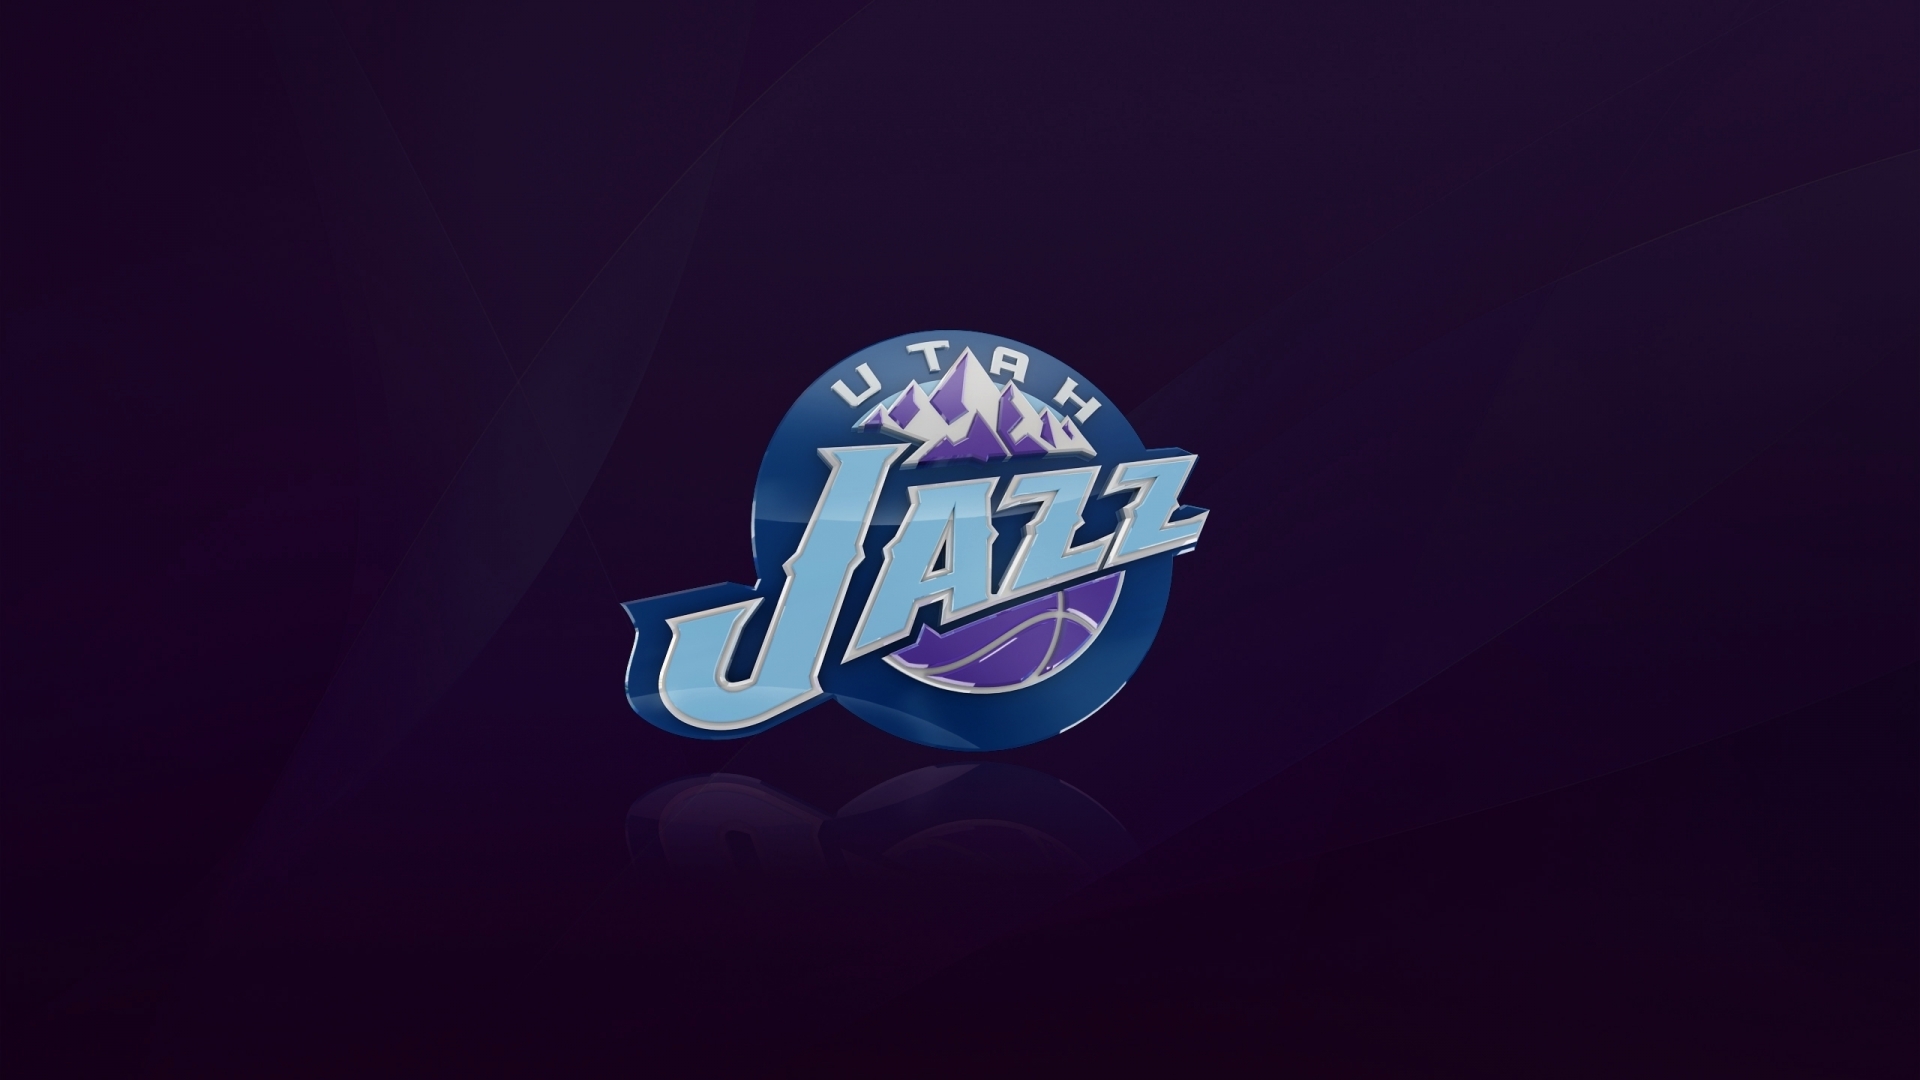 Utah Jazz Logo for 1920 x 1080 HDTV 1080p resolution